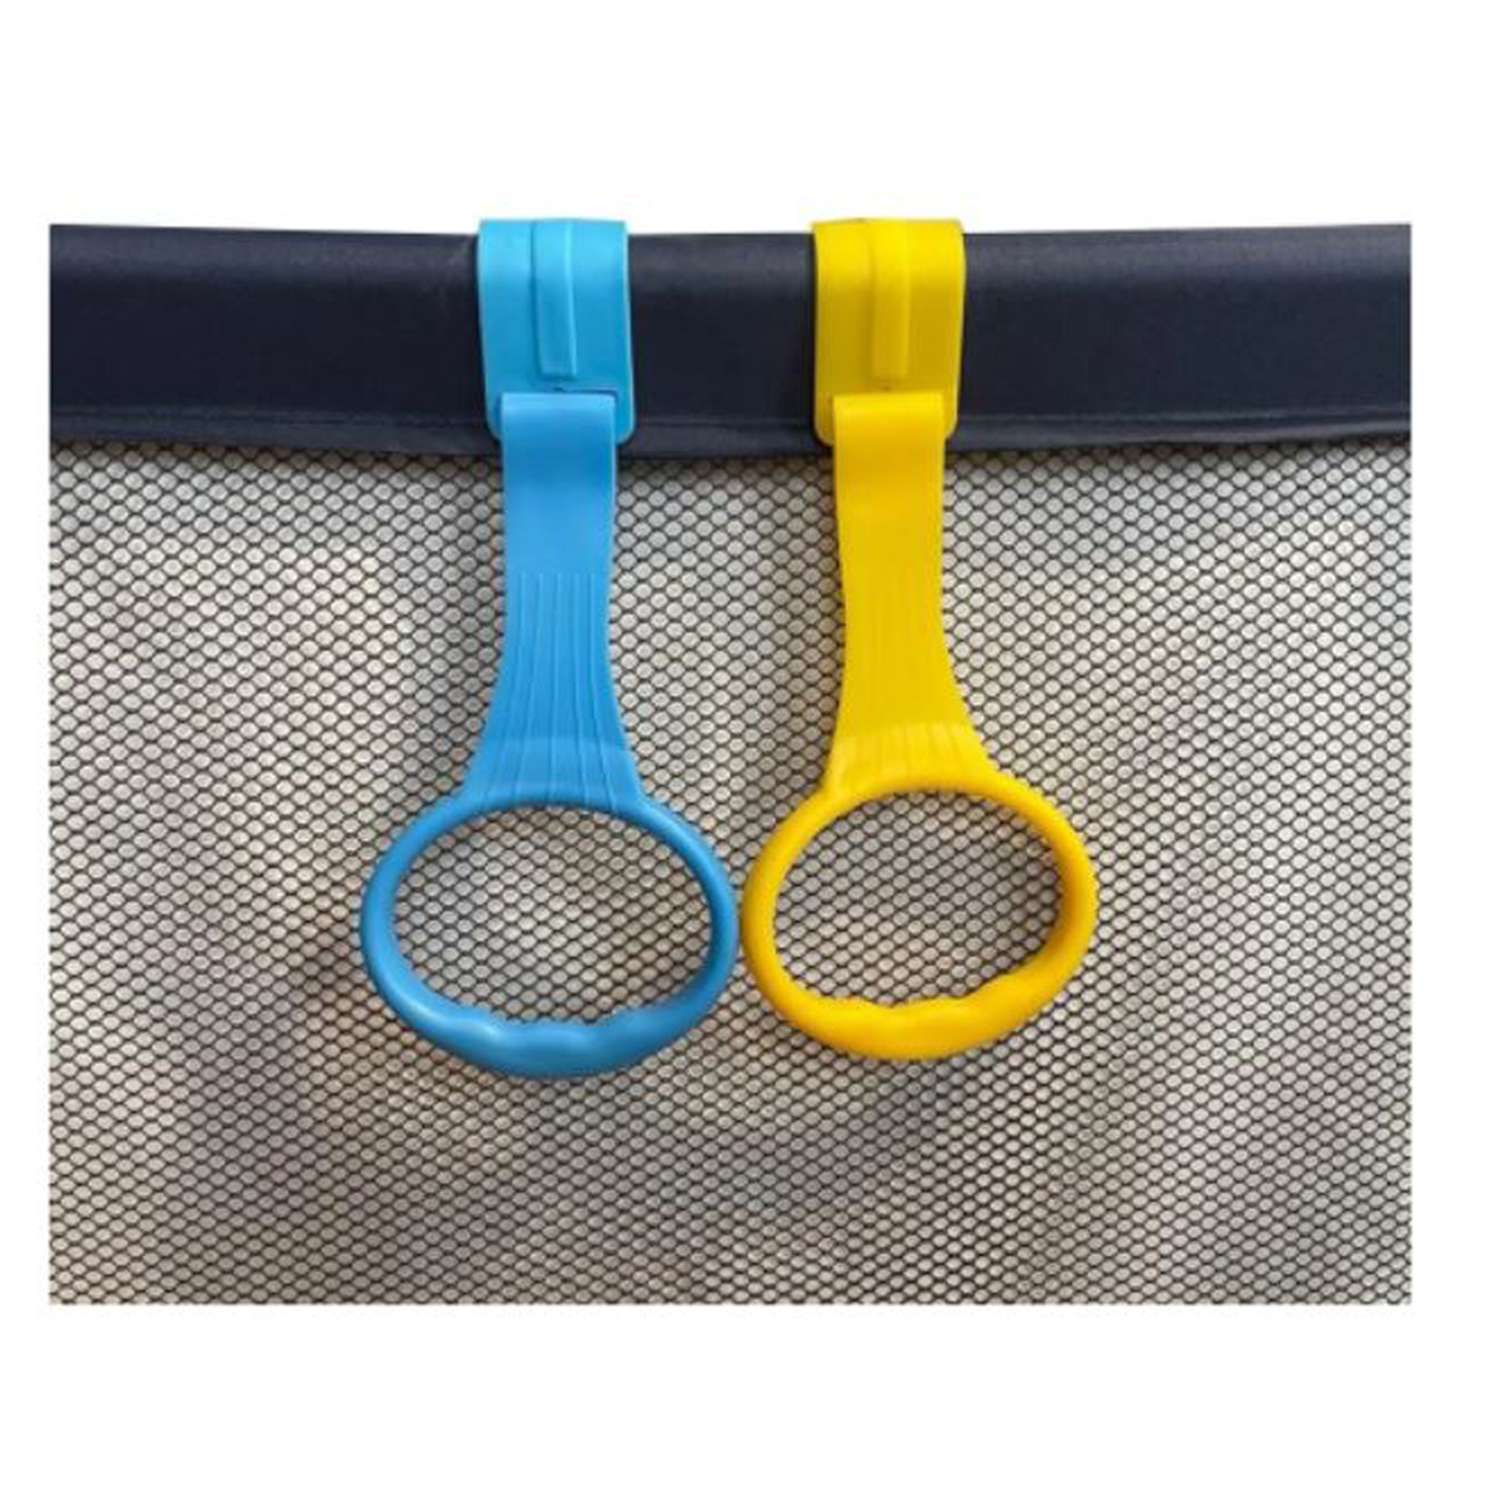 Пластиковые кольца Floopsi для манежа или барьера подвесные 2 шт kolso-2pc-red - фото 3